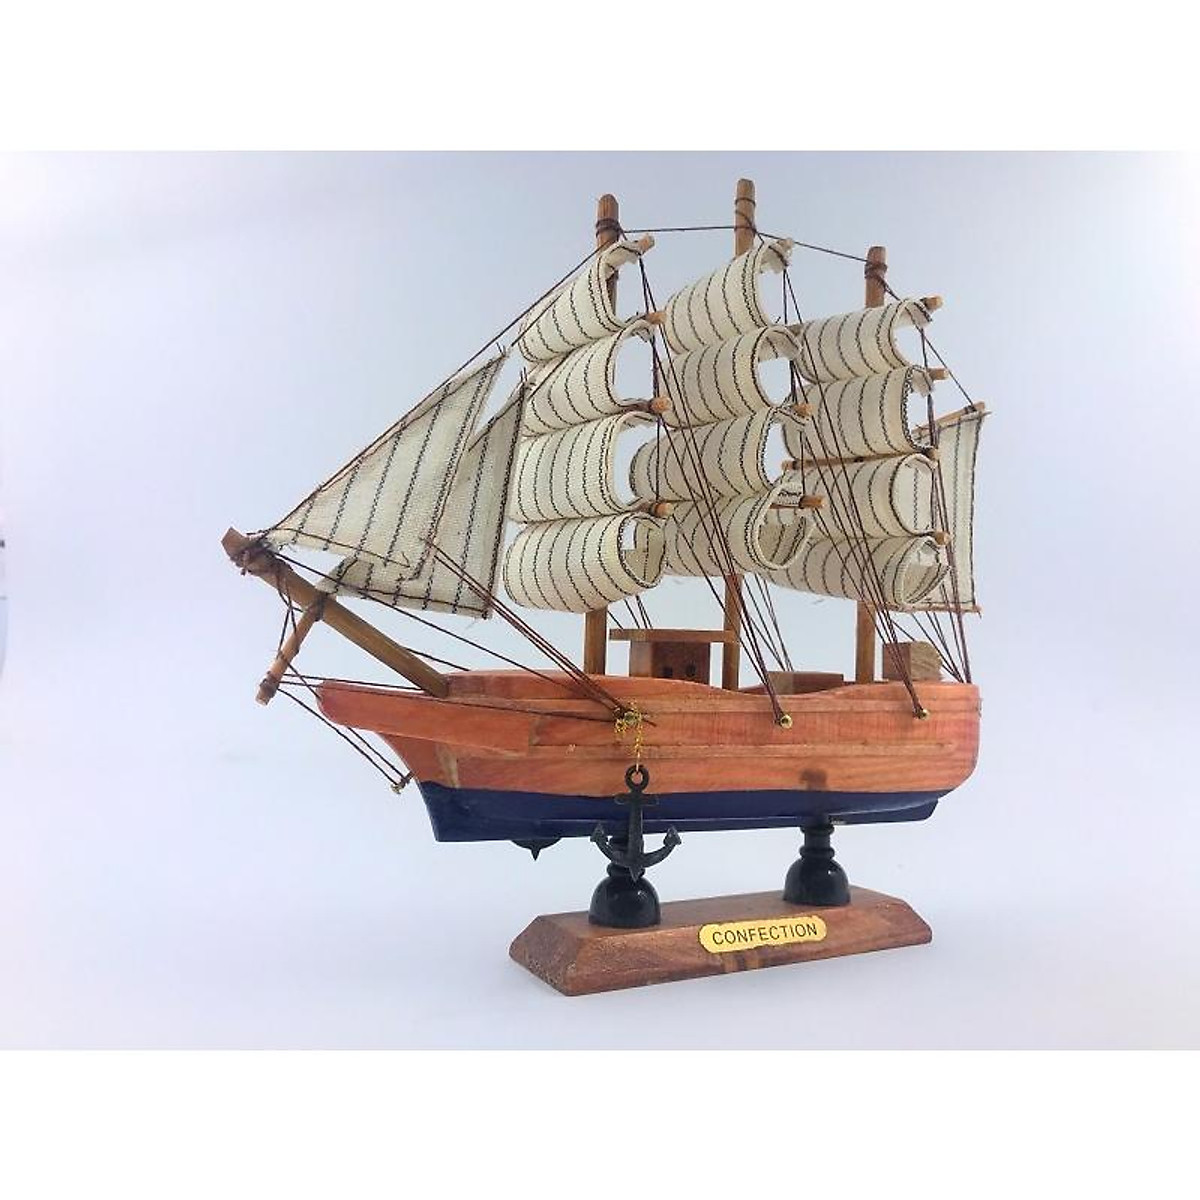 Mô hình thuyền buồm phong thủy Jyland